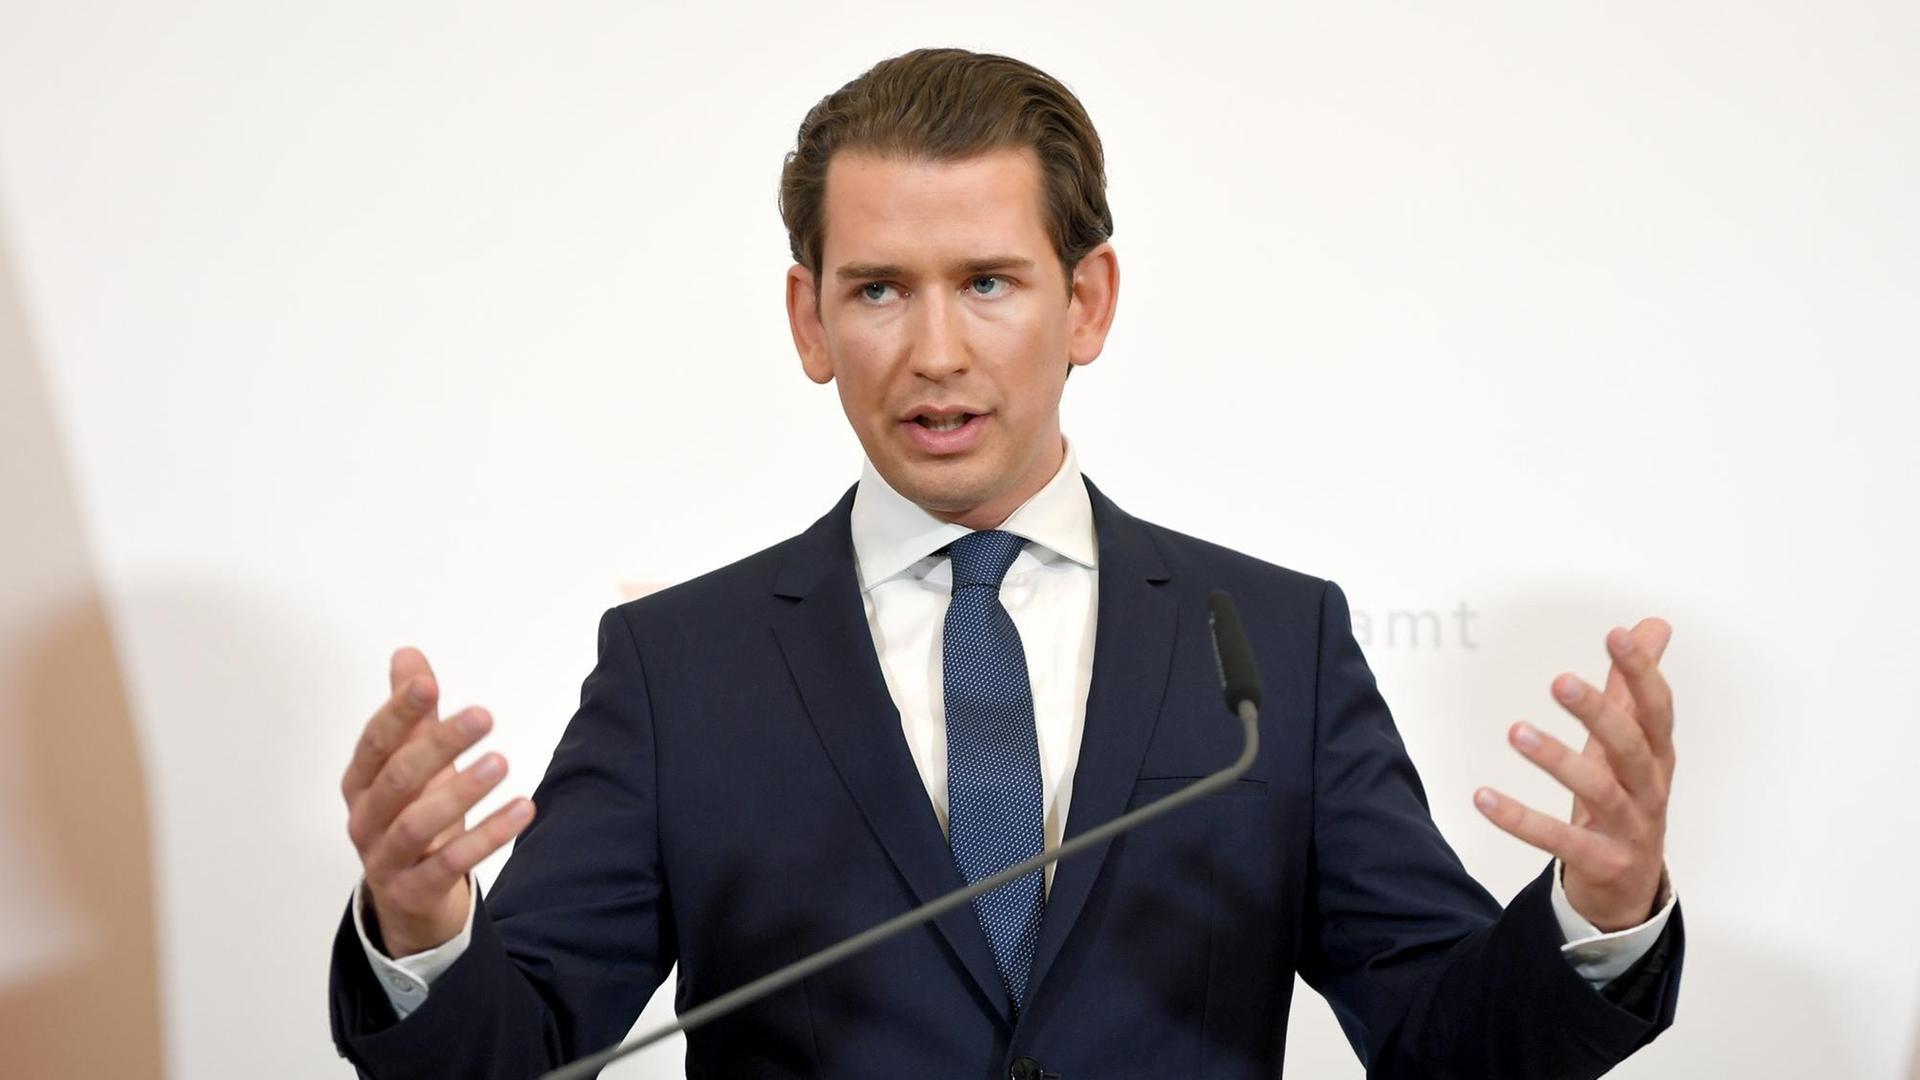 Bundeskanzler Sebastian Kurz (OEVP) kündigt Neuwahlen an infolge der Veröffentlichung des "Ibiza - Videos" in der Causa Strache, am Samstag, 18. Mai 2019, im Bundeskanzleramt in Wien